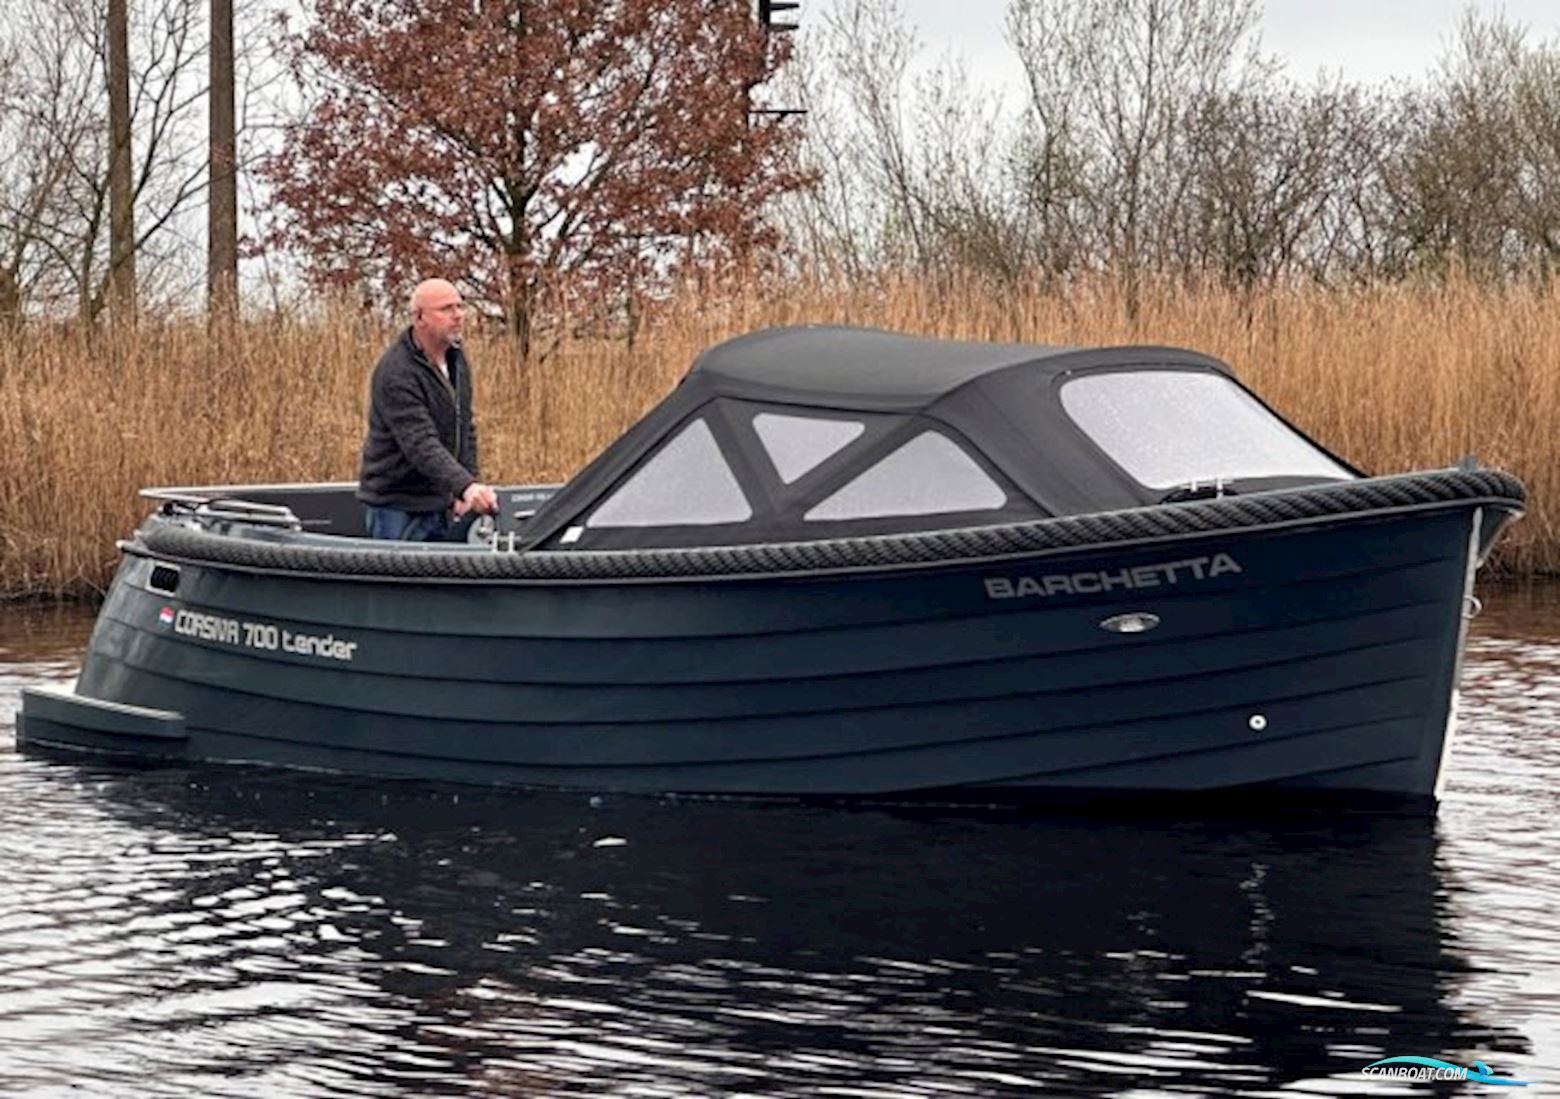 Corsiva 700 Tender Motorbåt 2013, med Vetus Mitsubishi motor, Holland